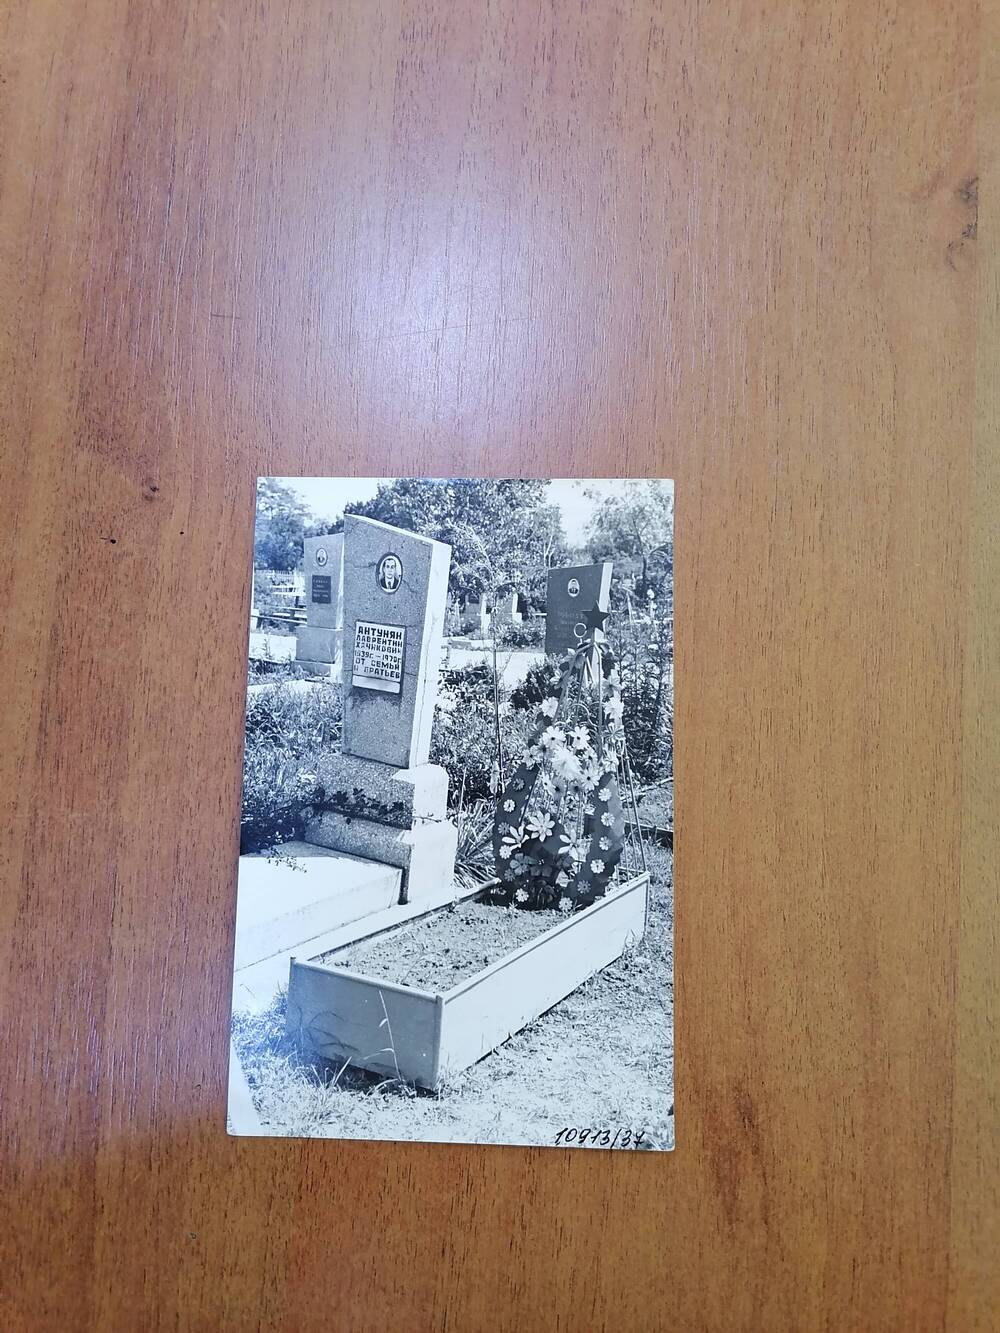 Фото черно-белое могила на кладбище в ст.Отрадной ефрейтора Пискунова (1960-1979 гг.), погибшего в Афганистане при исполнении интернационального долга